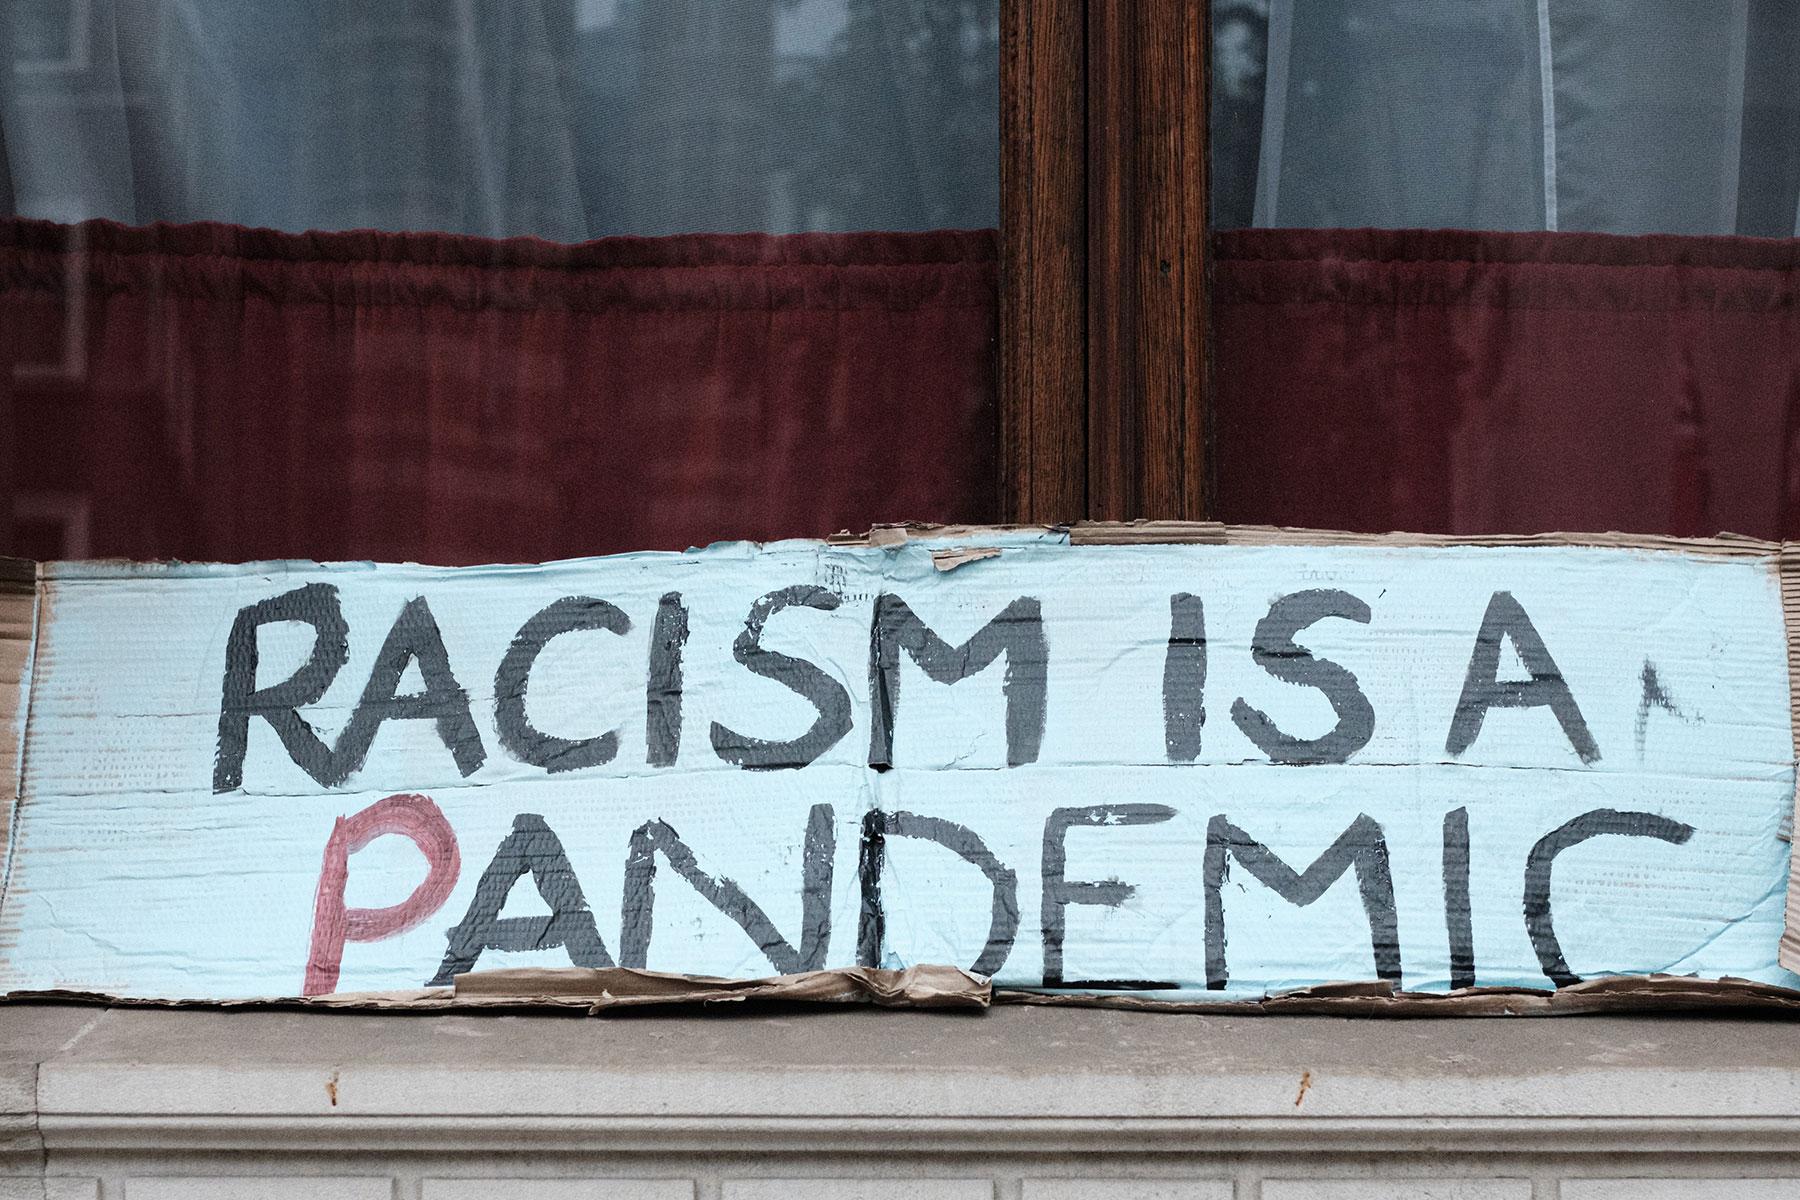 Ein Slogan, der bei einer "Black Lives Matter"-Protestveranstaltung in London verwendet wurde. Foto: Ehimetalor Akhere Unuabona via Unsplash